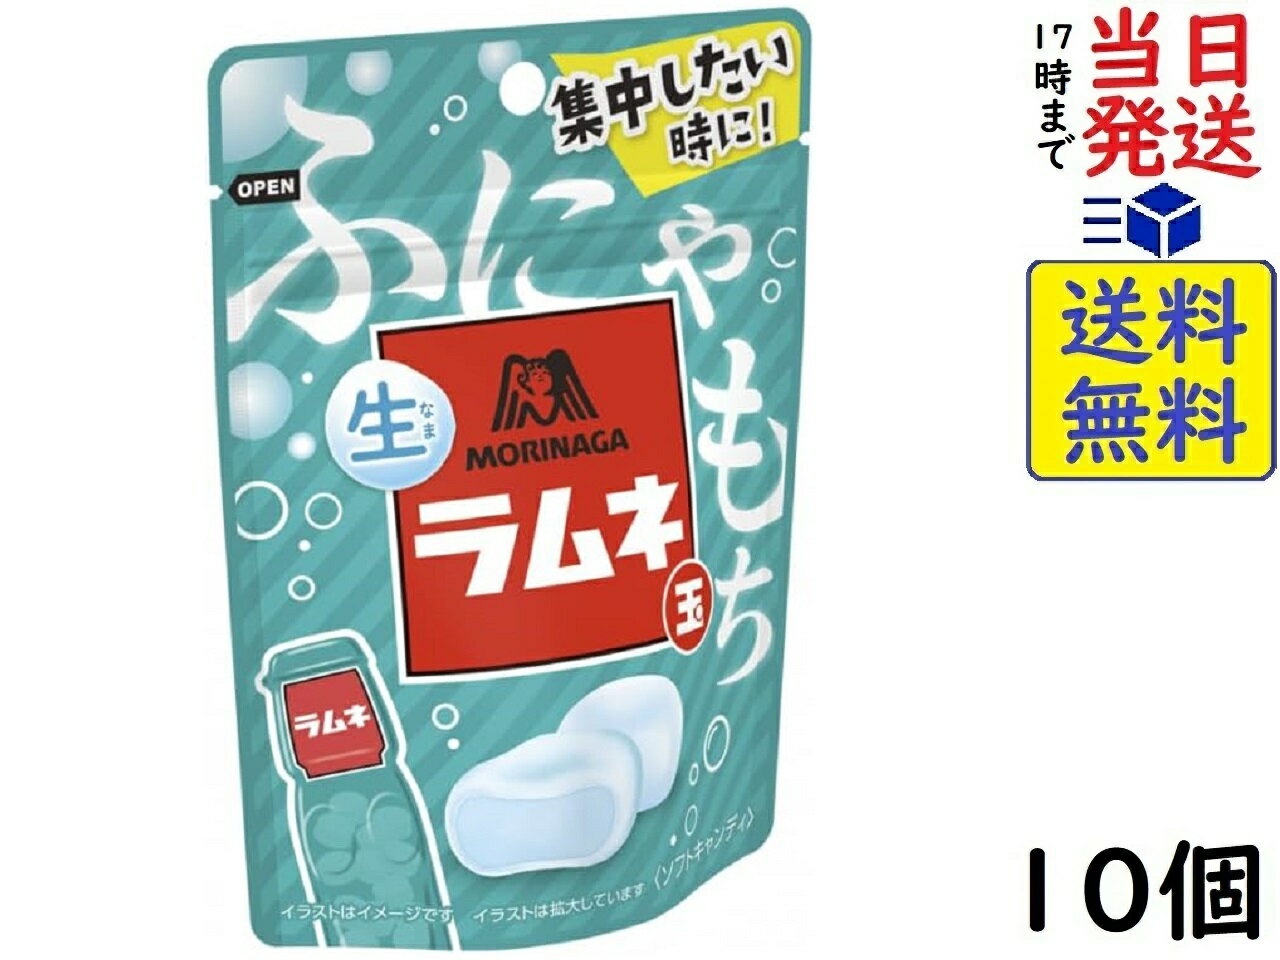 森永製菓 生ラムネ玉 35g ×10個賞味期限2025/01の商品画像